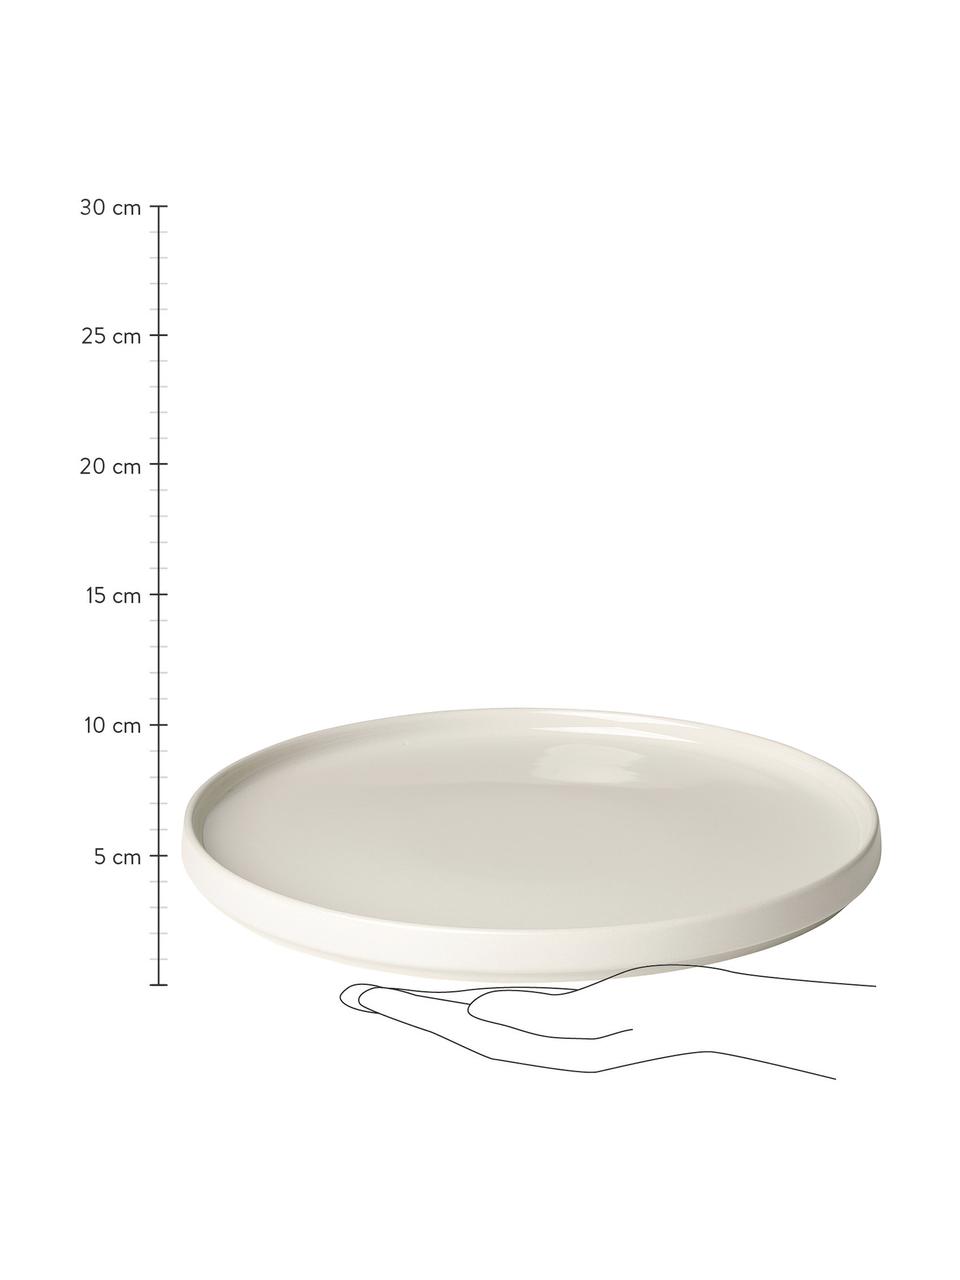 Assiette plate beige mat/brillant Pilar, 6 pièces, Céramique, Blanc crème, Ø 27 cm